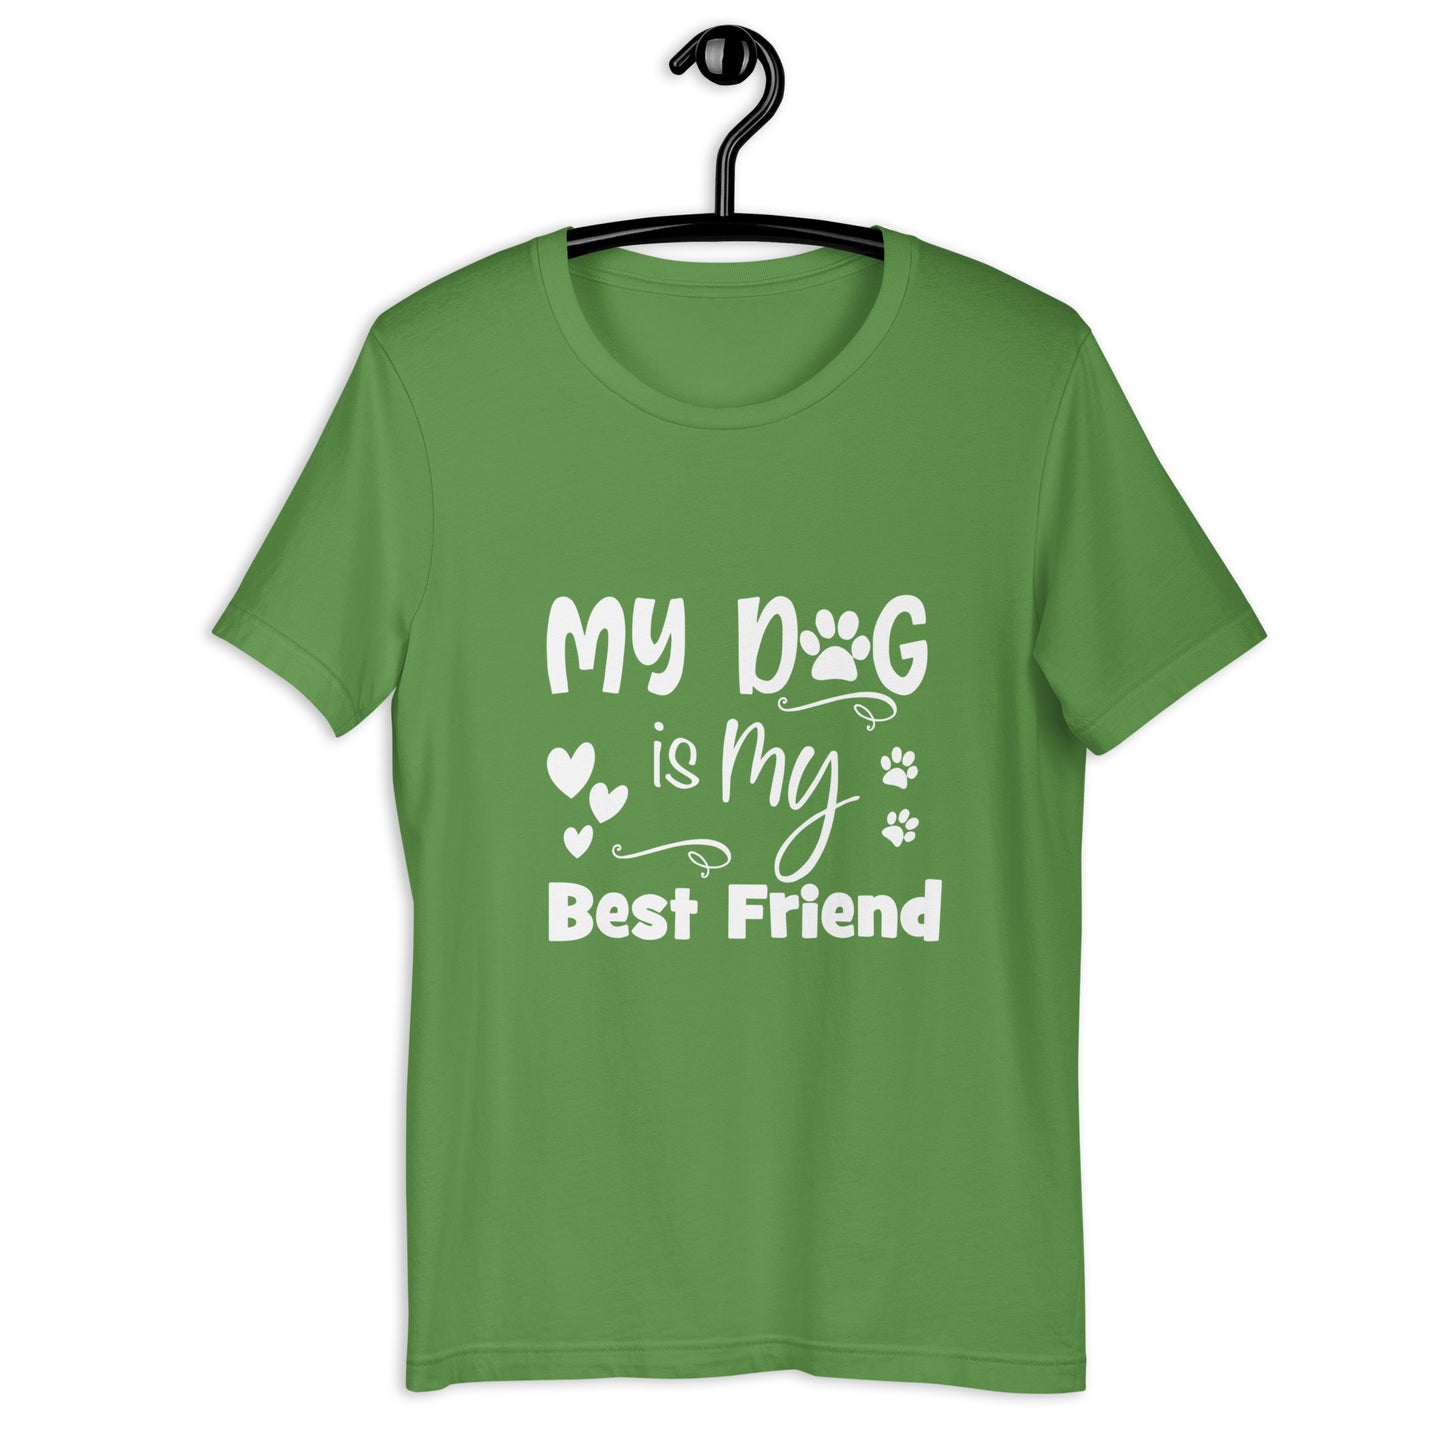 MY DOG IS MY BEST FRIEND - Unisex t-shirt